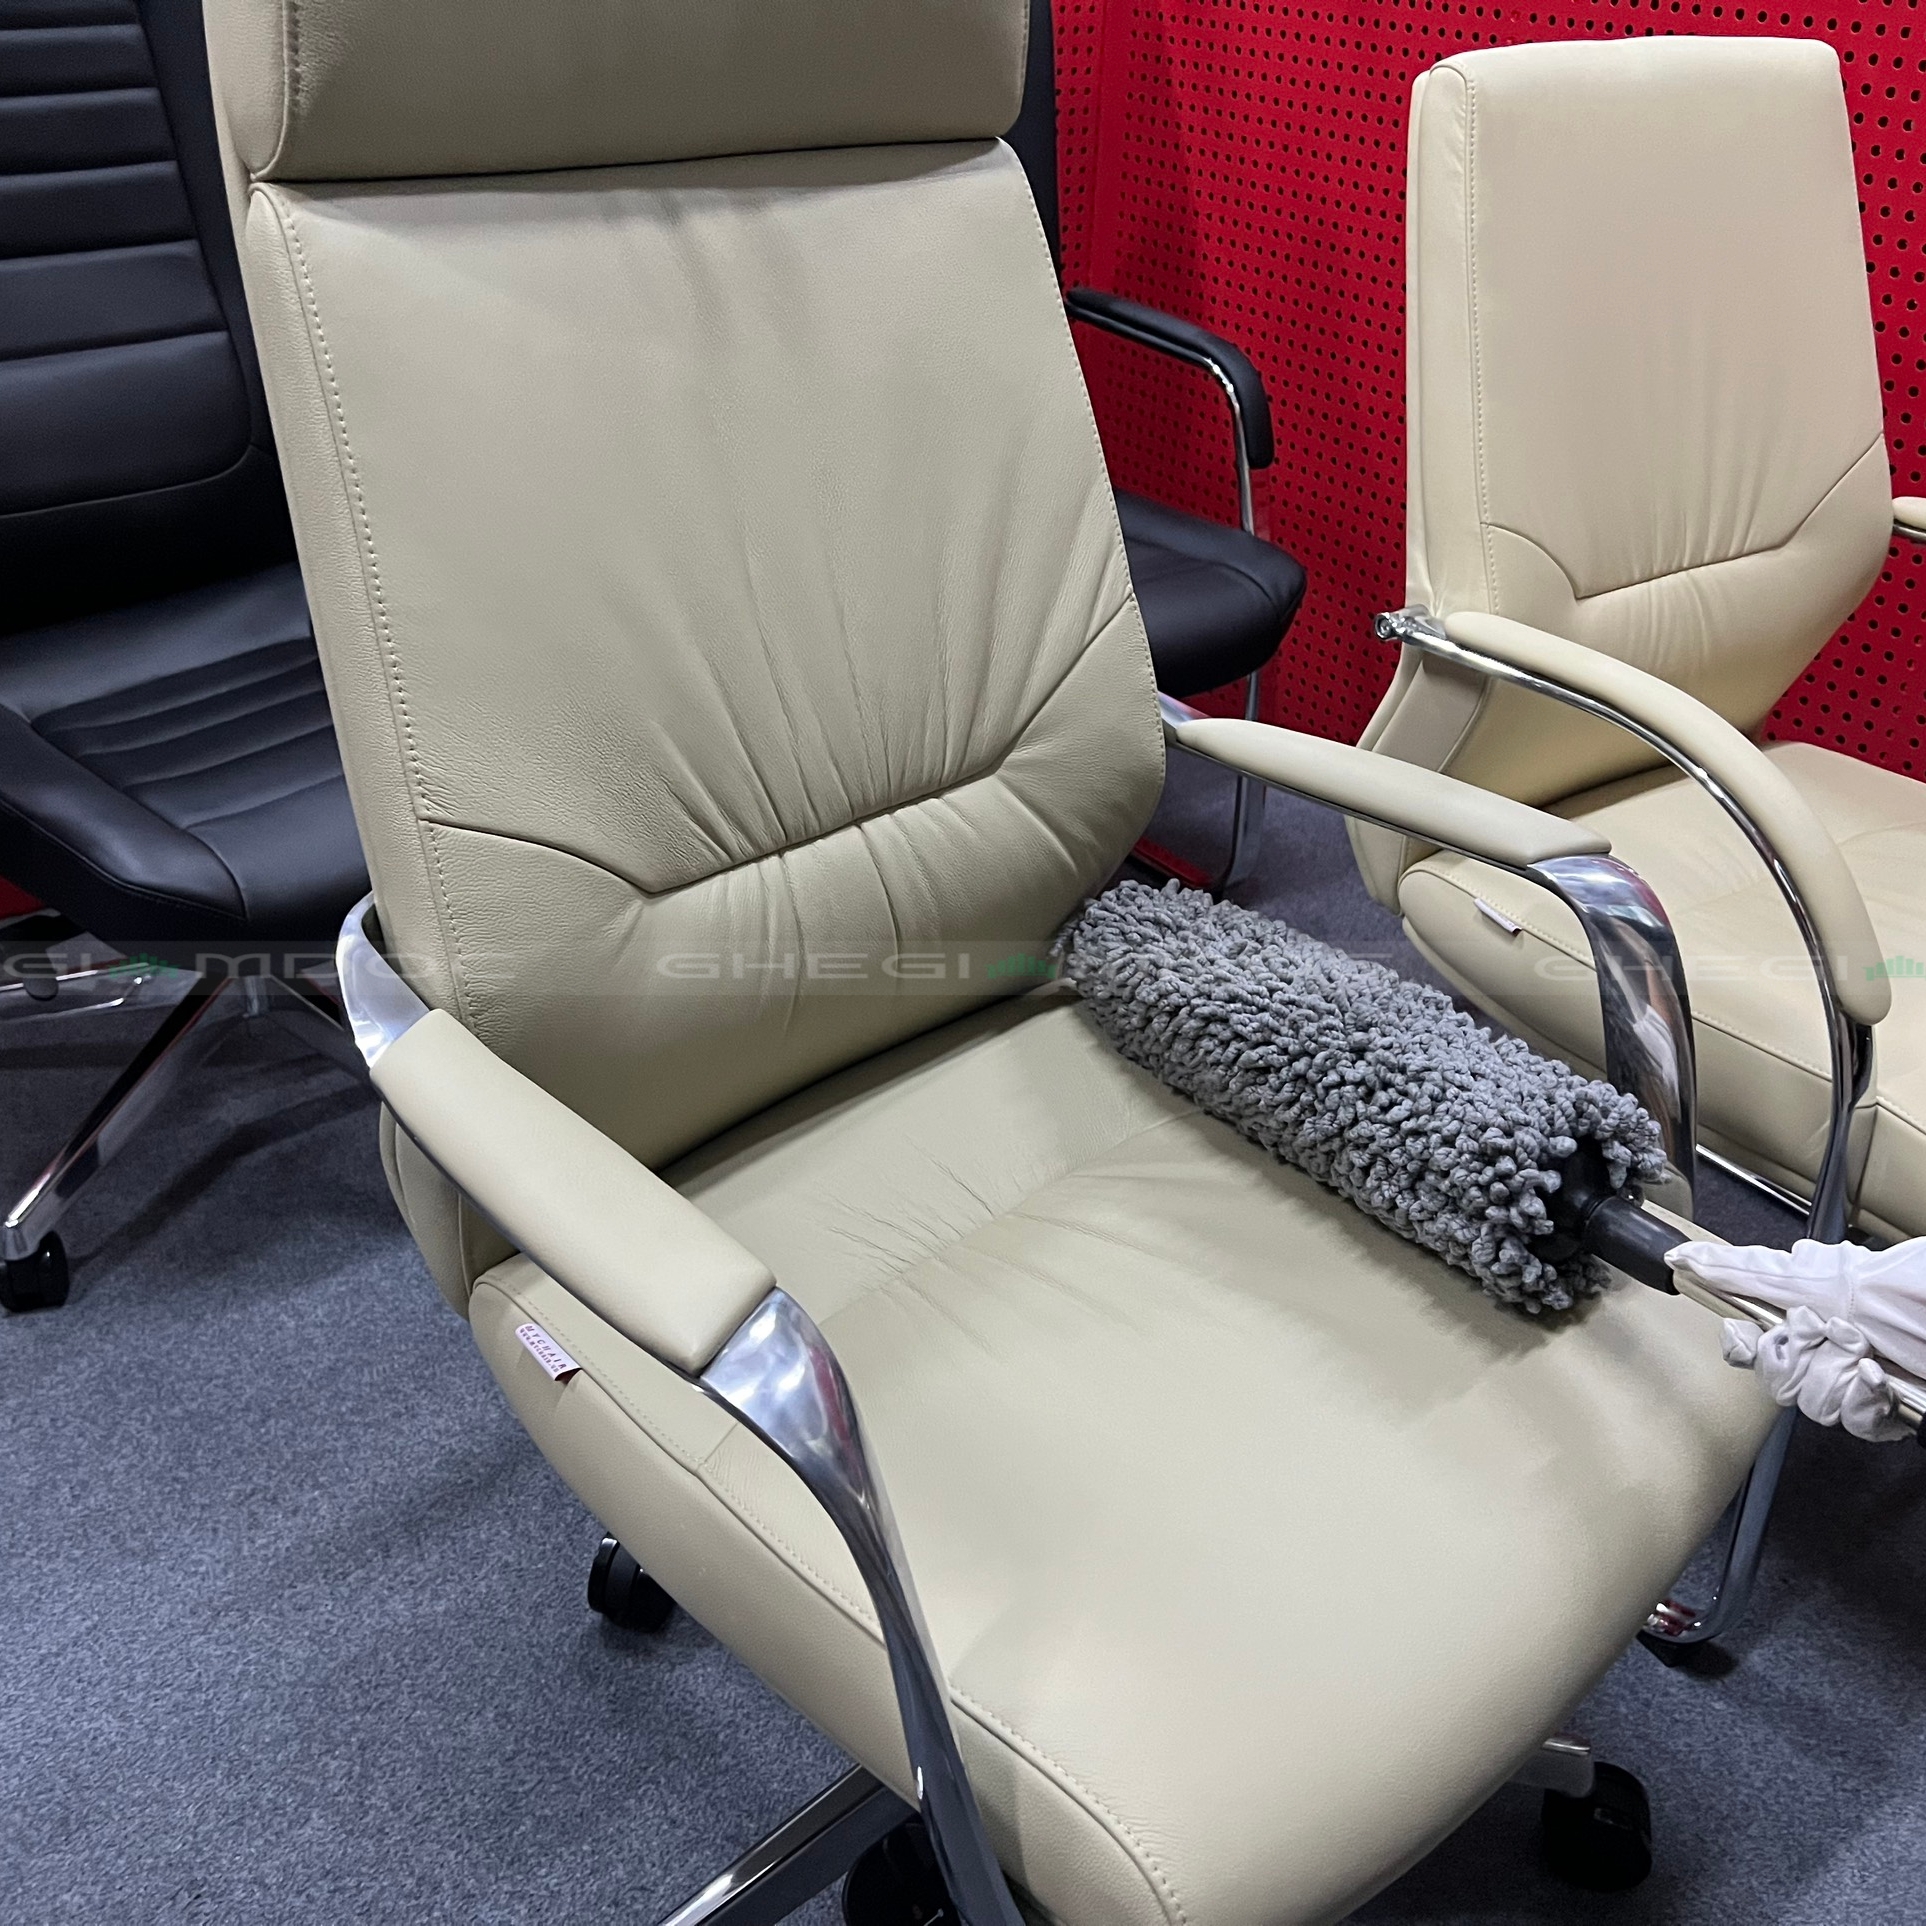 Vệ sinh ghế giám đốc da - Bảo quản ghế ở nhiệt độ thích hợp